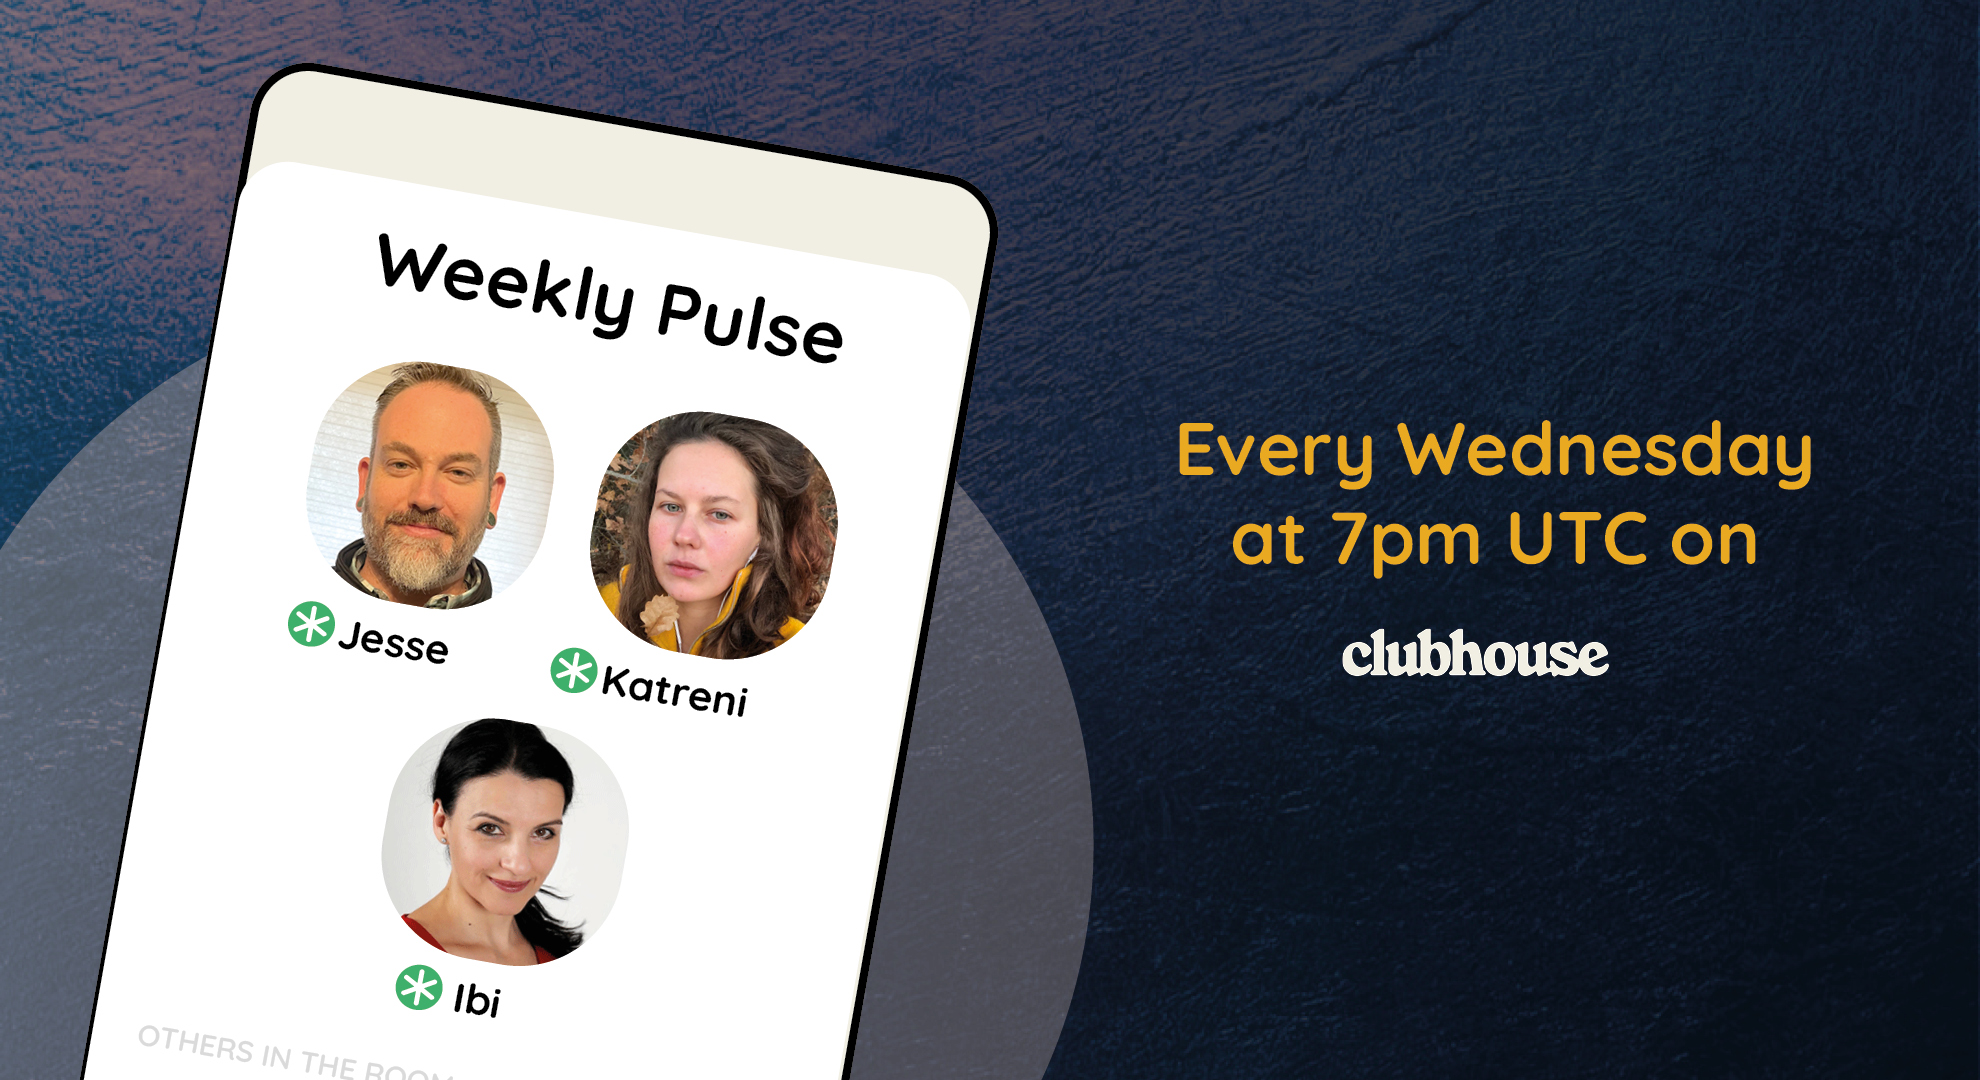 Weekly Pulse Clubhouse Wednesday 7pm UTC